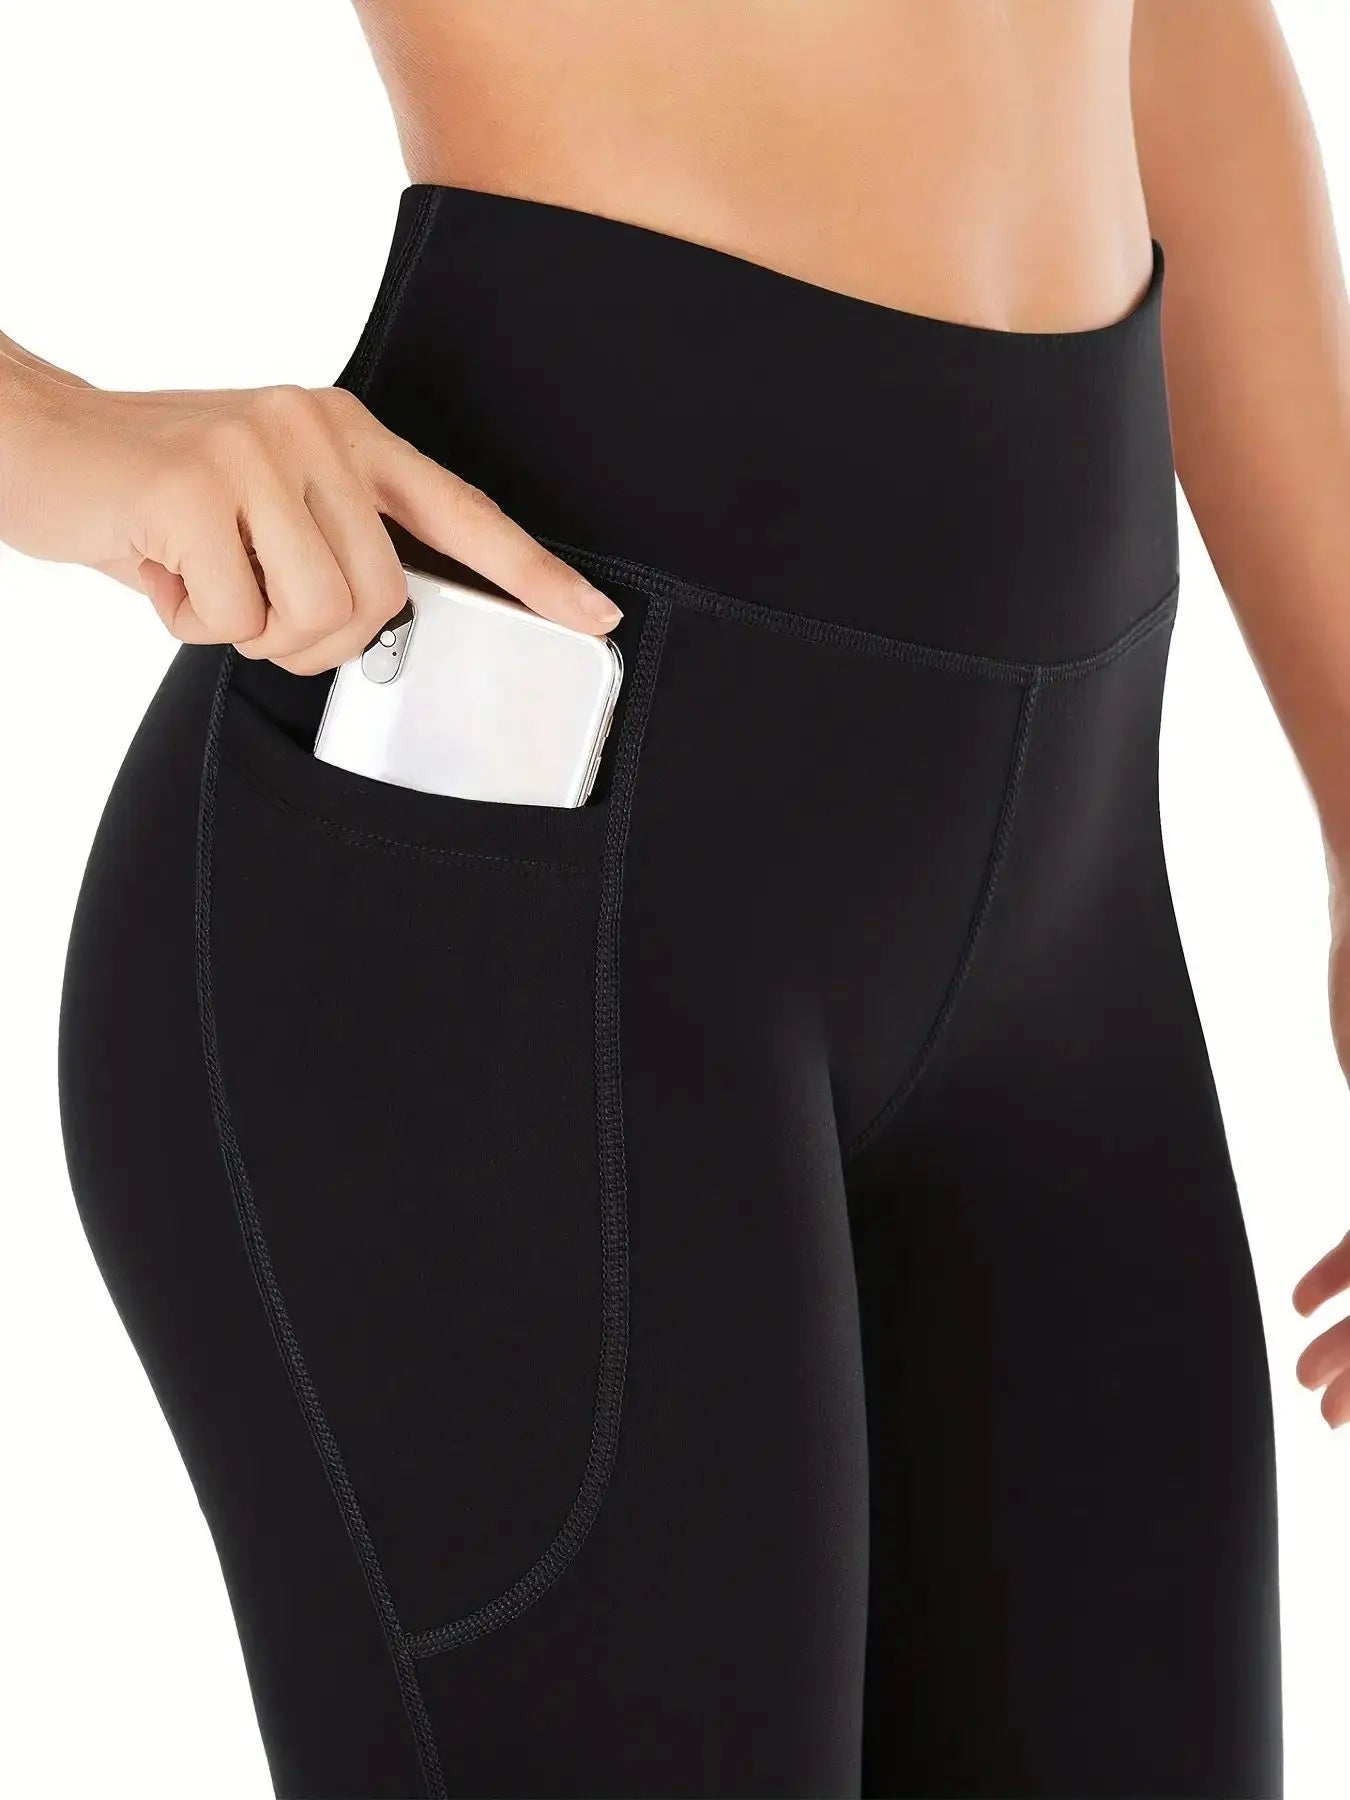 Pantalons évasés pour femmes - Pantalons de yoga à jambes évasées